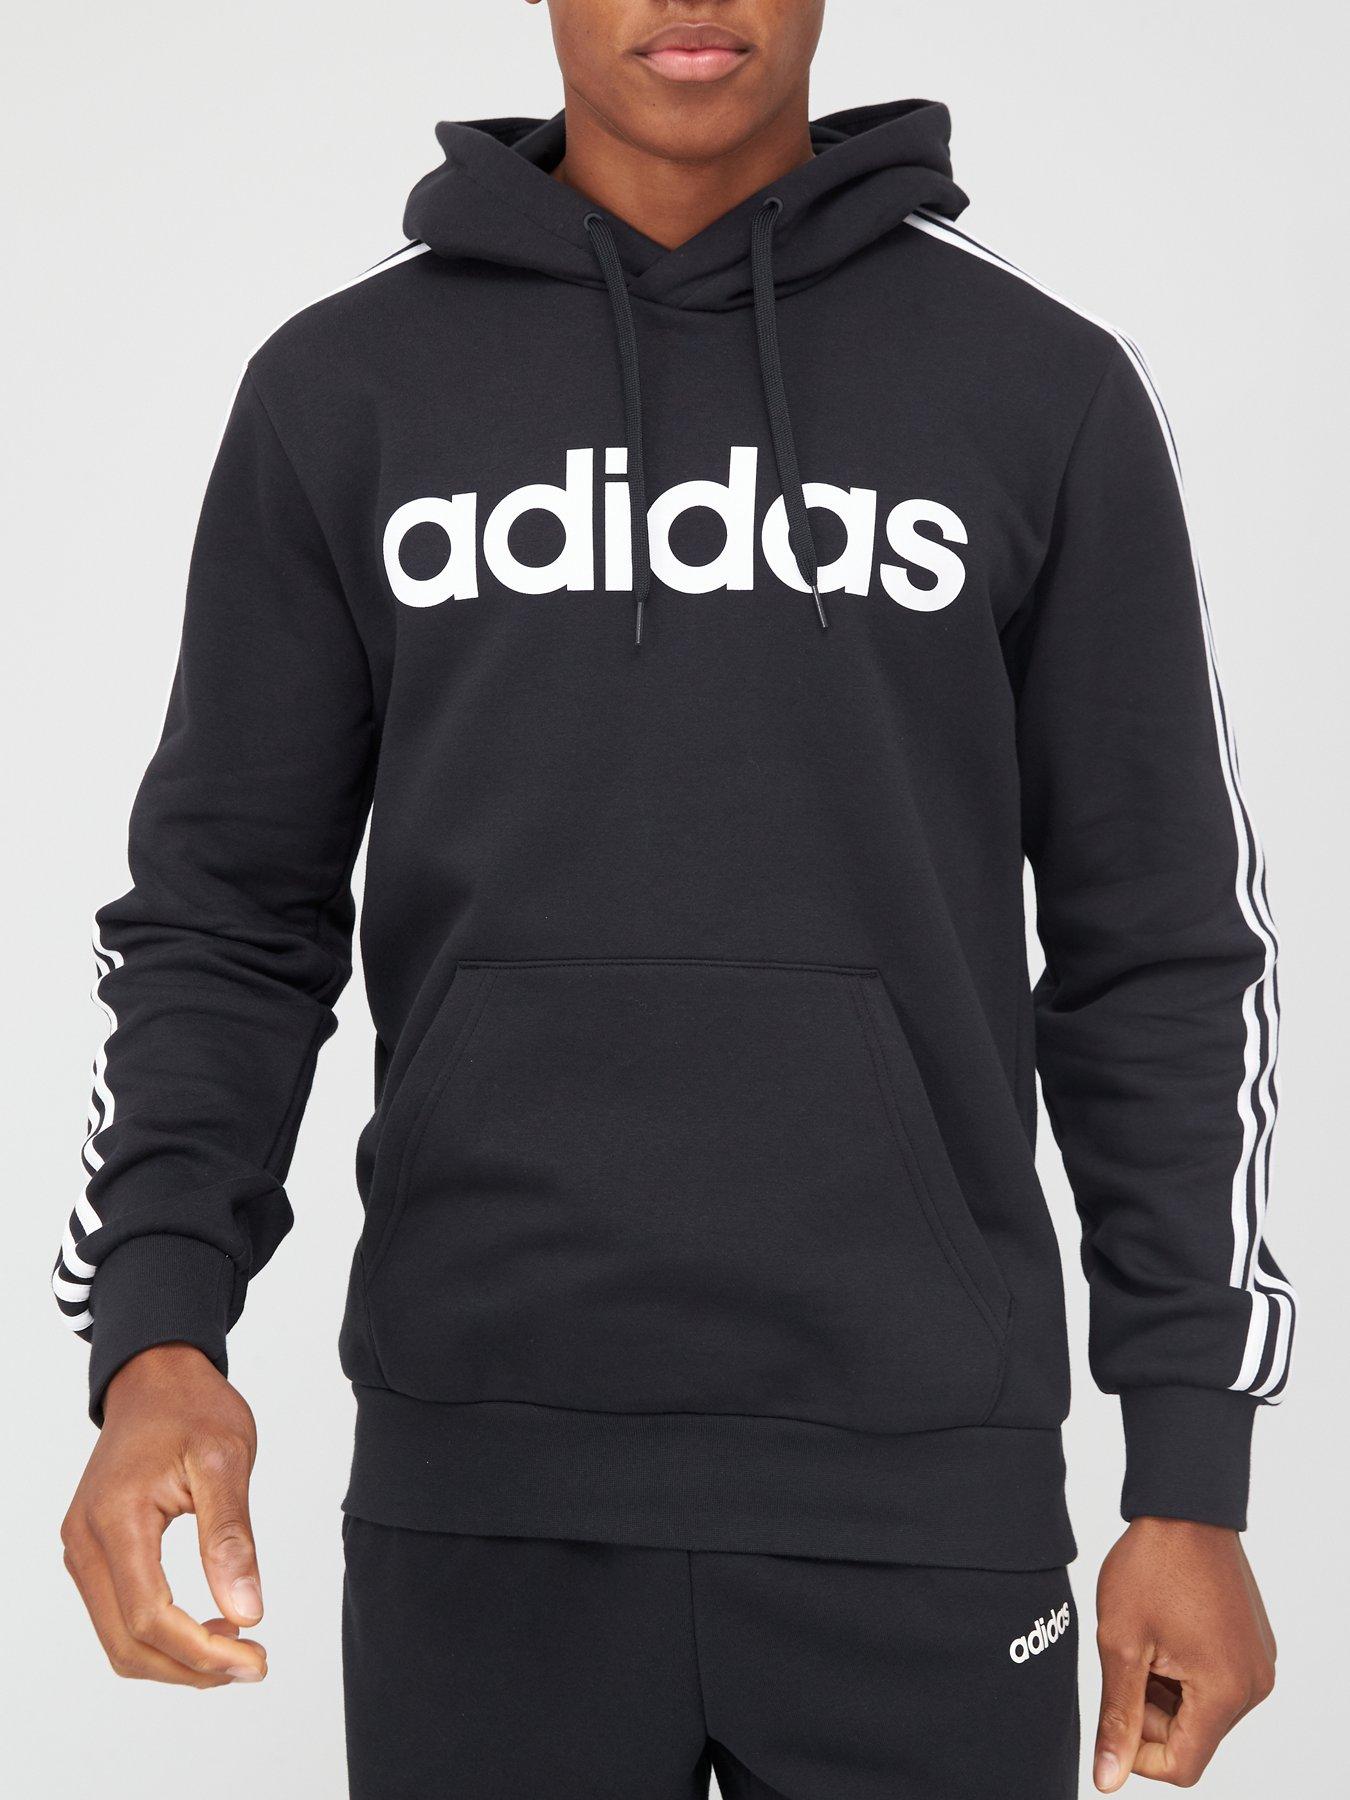 adidas men's essential hoodie